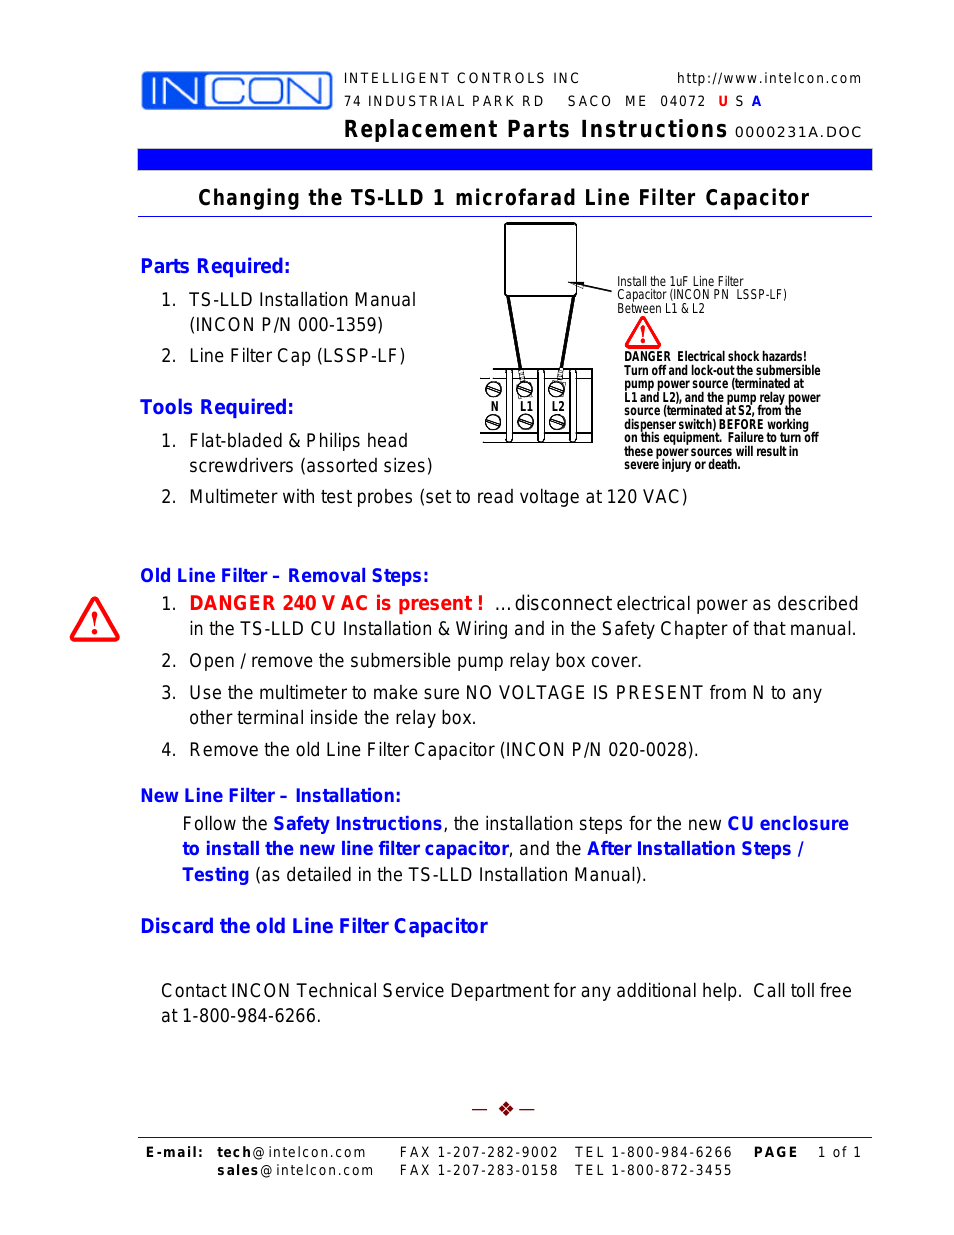 TS-LLD Changing the TS-LLD 1 microfarad Line Filter Capacitor